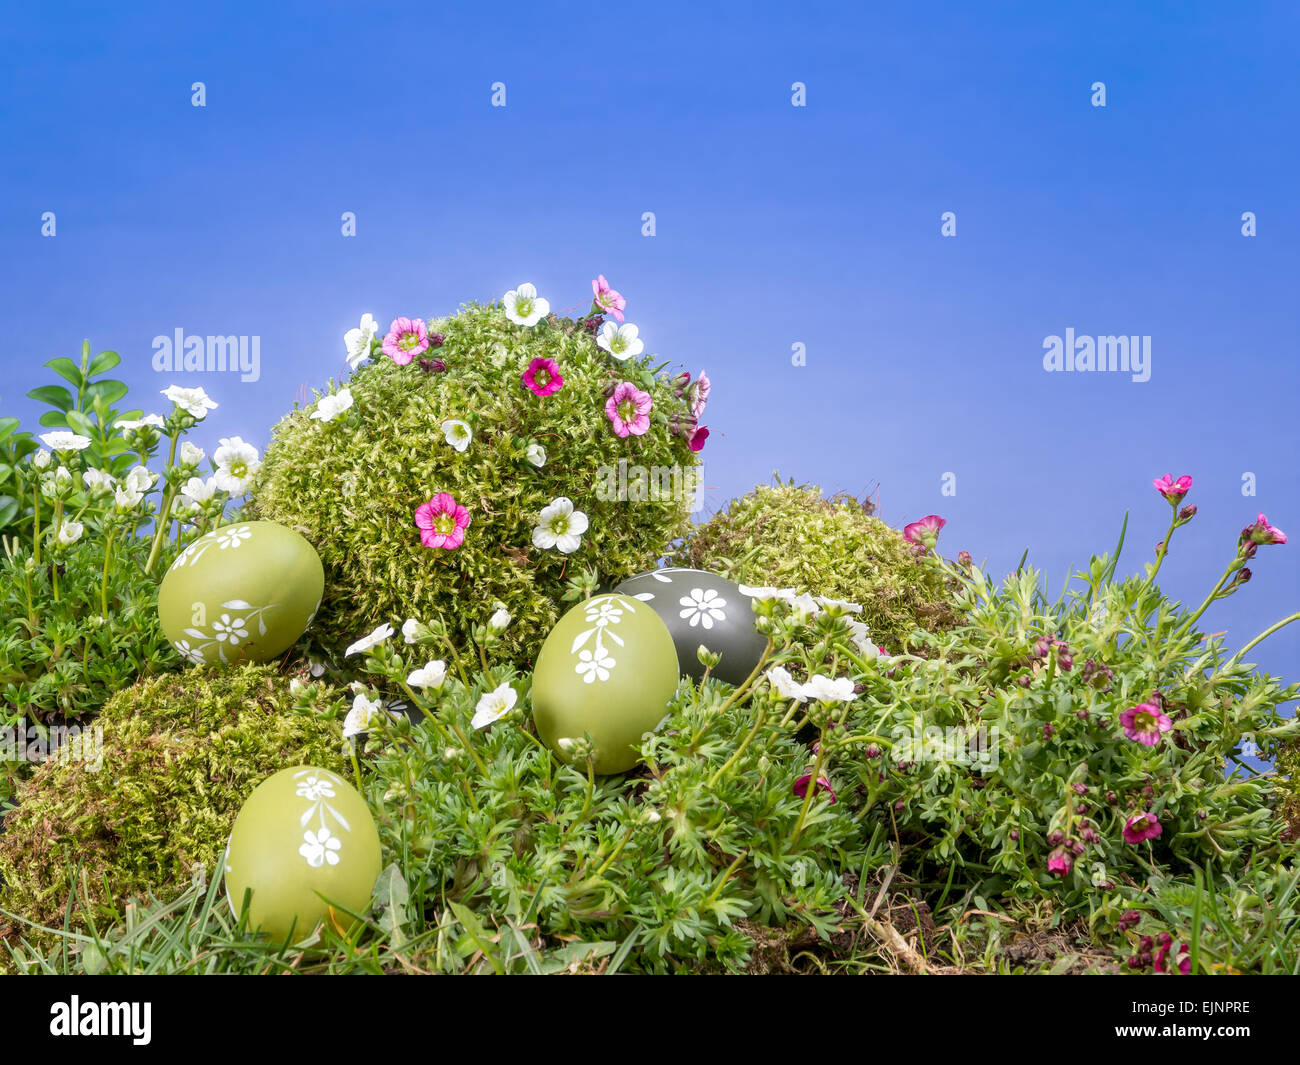 Le uova di pasqua sparsi in erba e muschio gigante cresciuto con uovo freschi fiori di primavera oltre il cielo blu Foto Stock